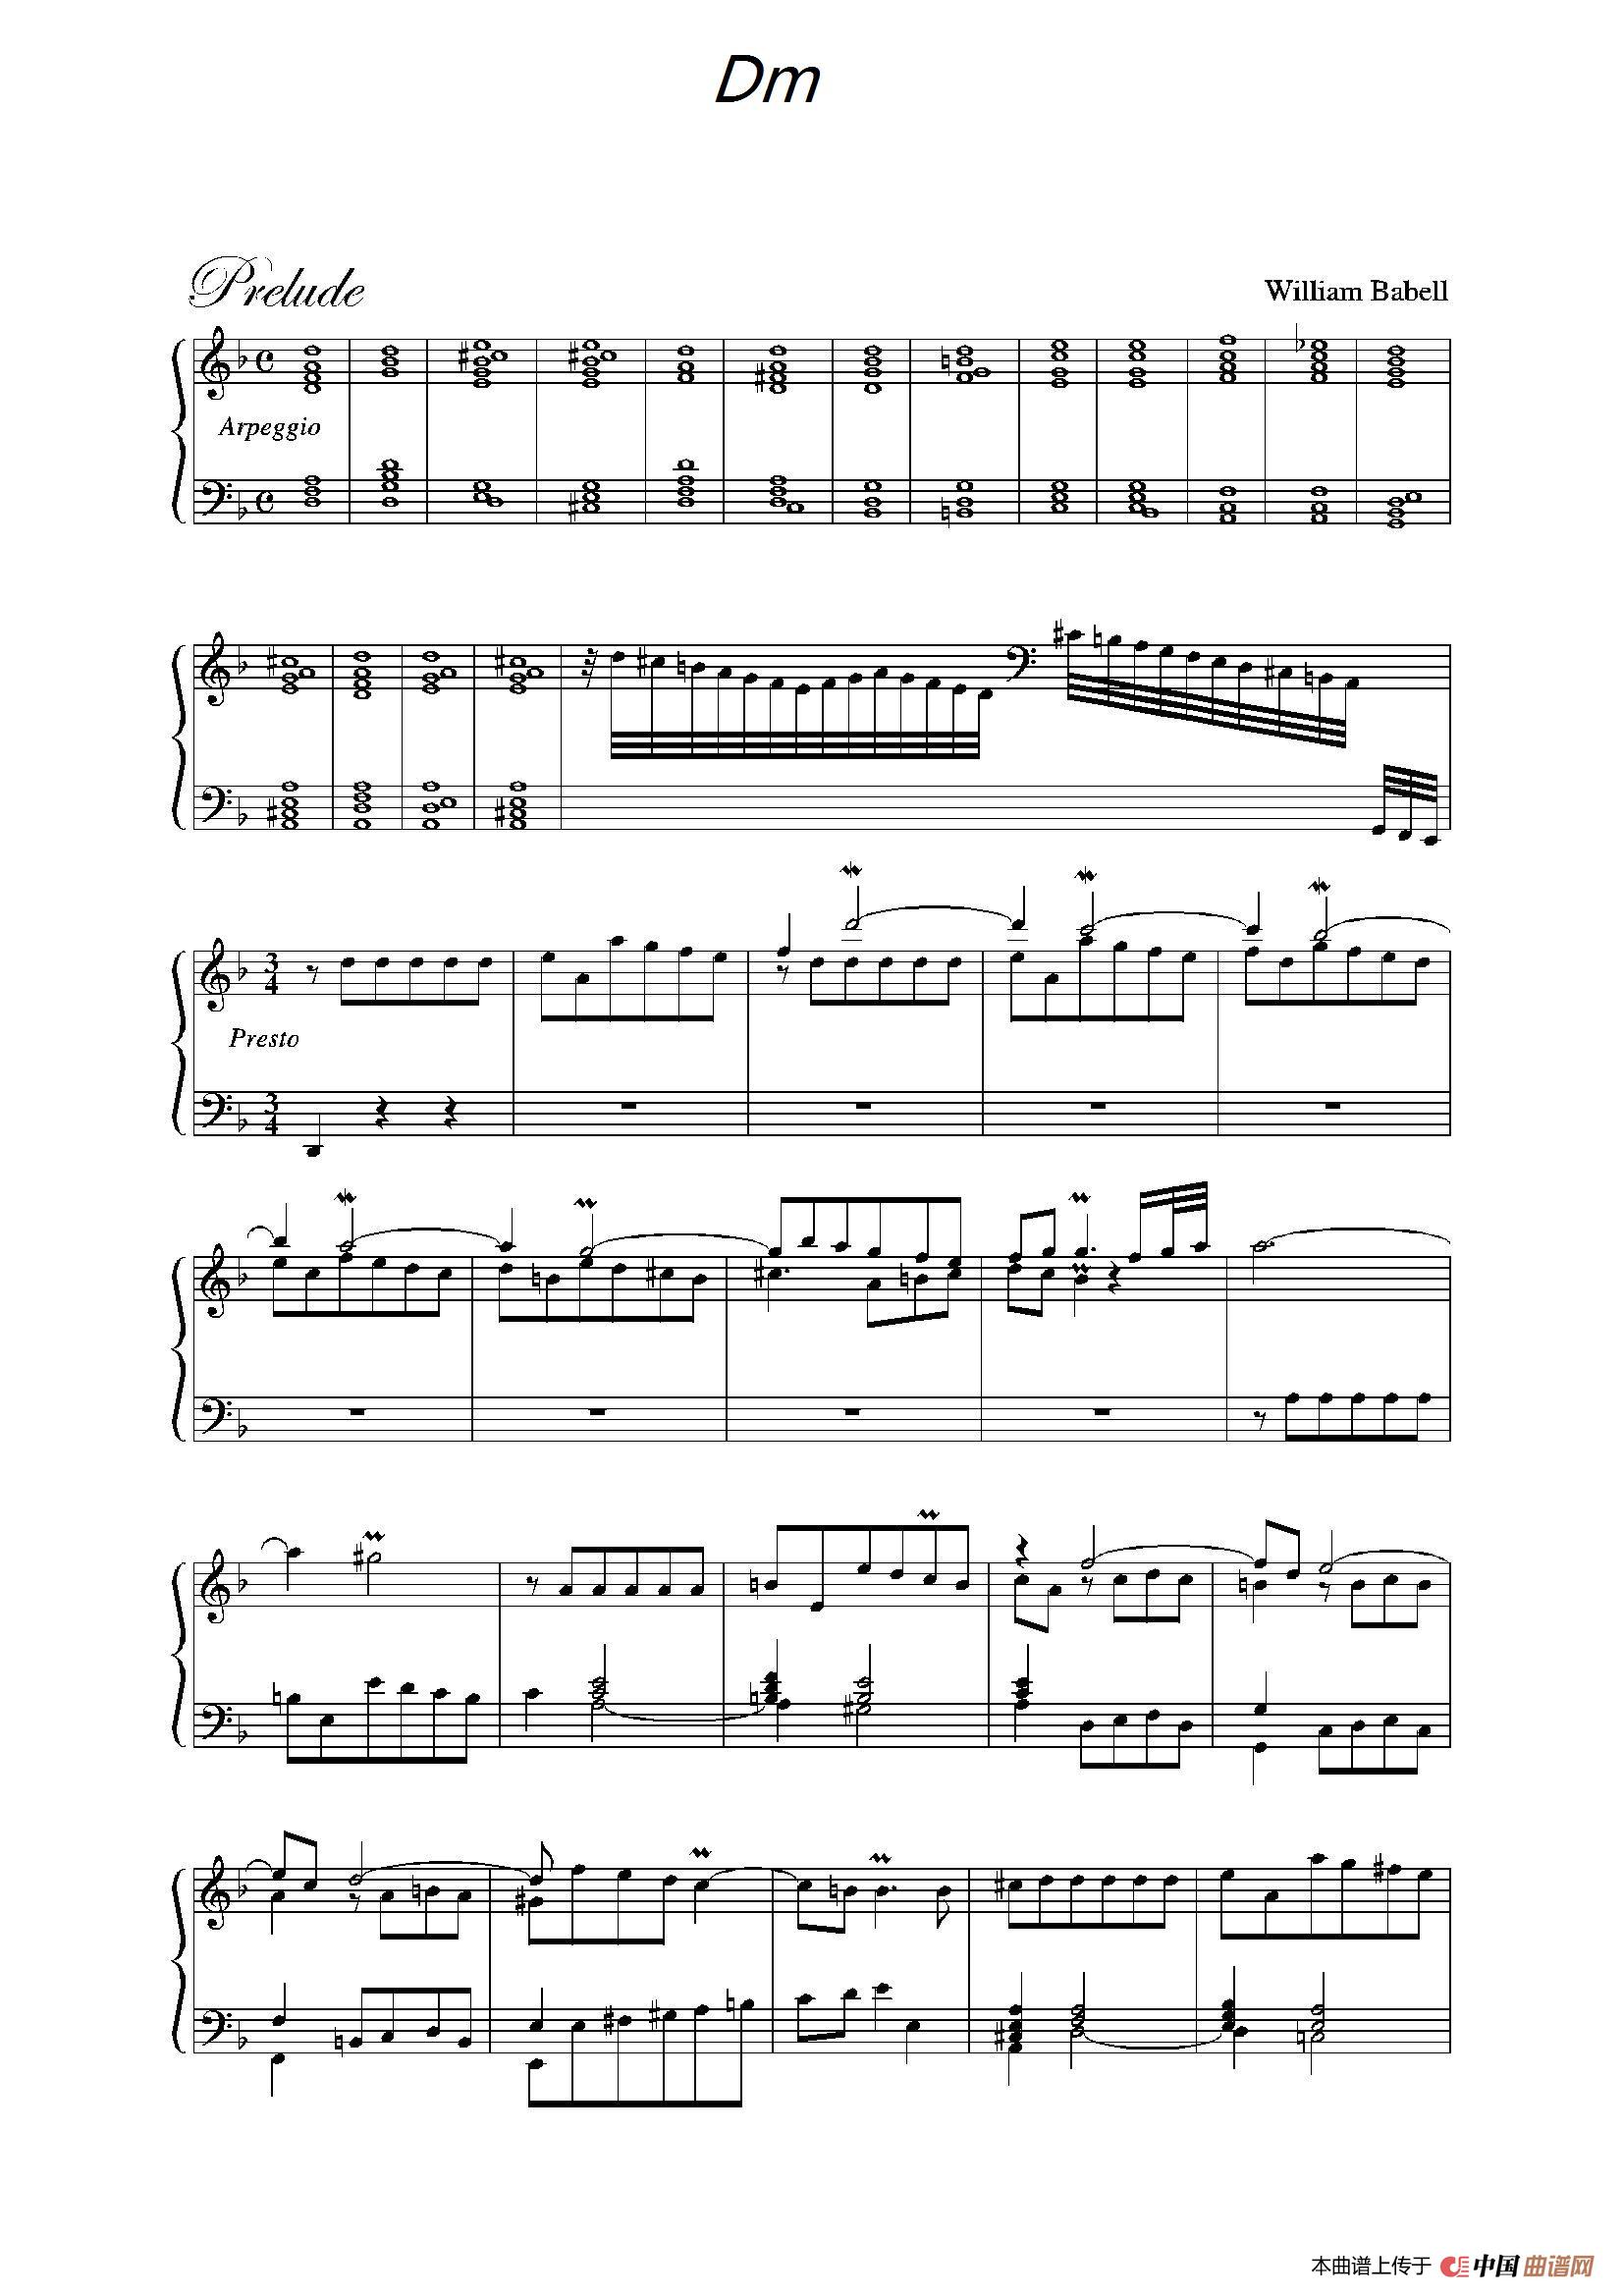 《Dm》钢琴曲谱图分享